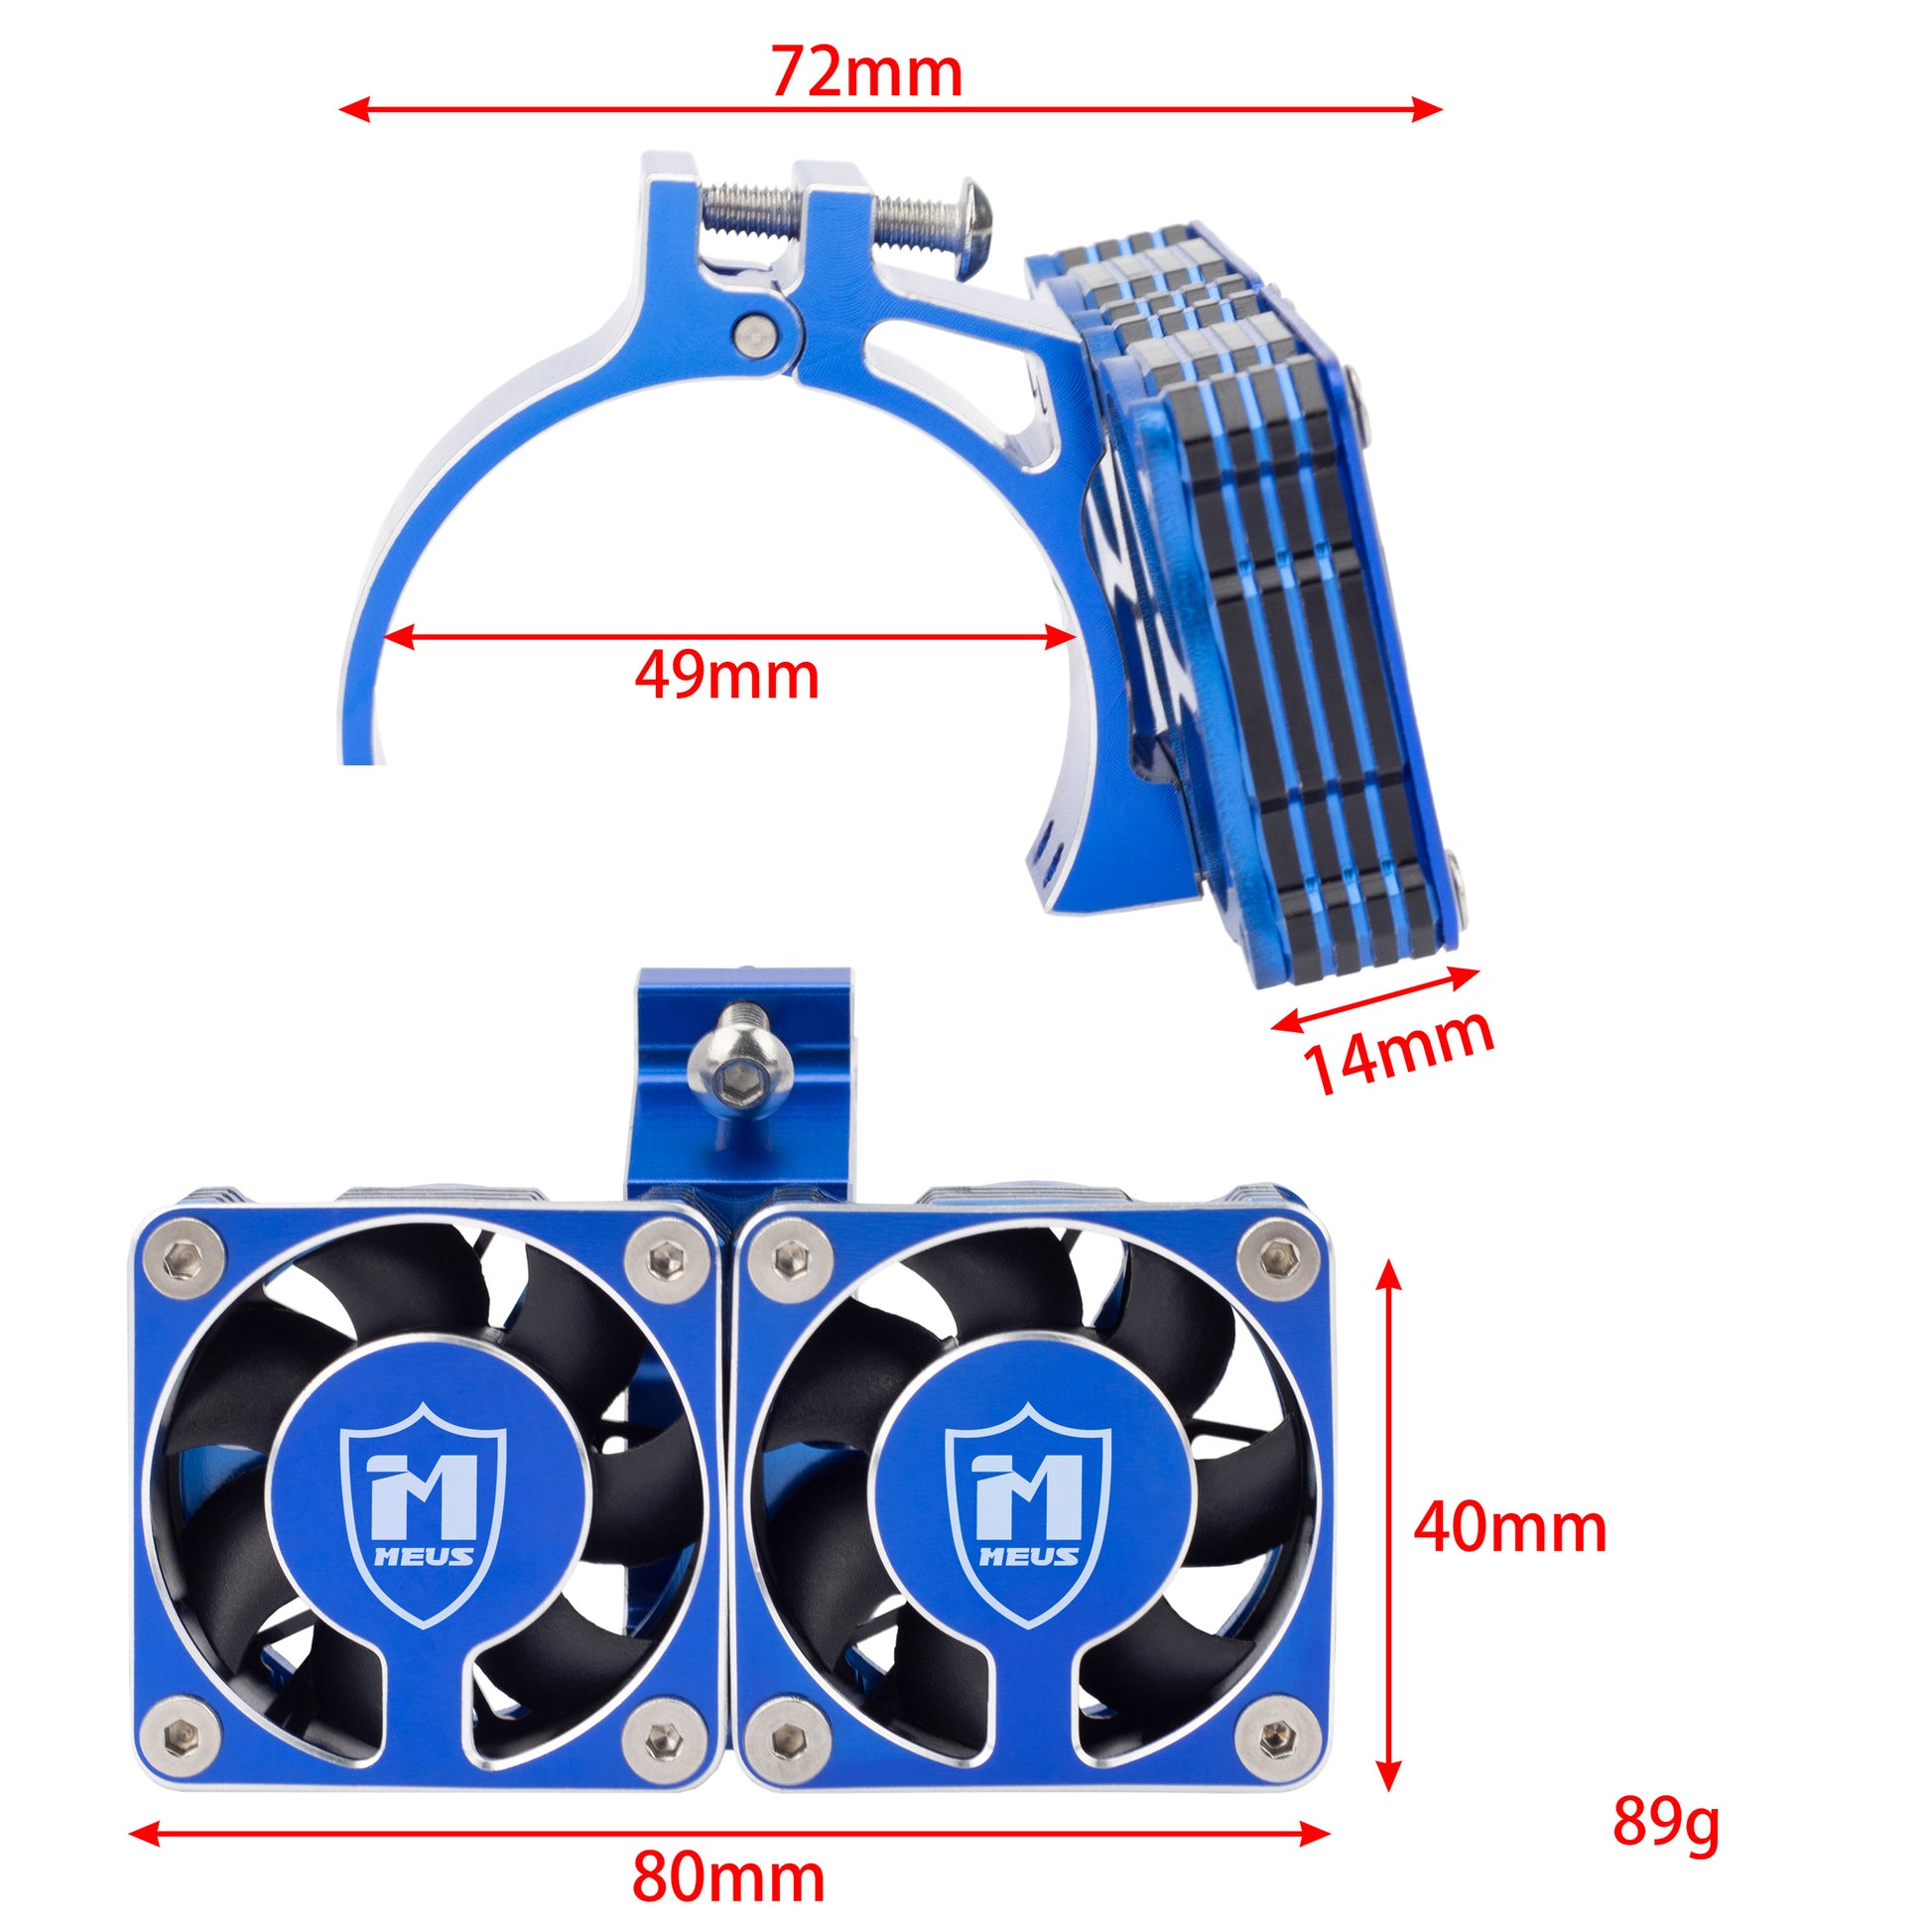  Blue RC motor cooling fan heat sink size